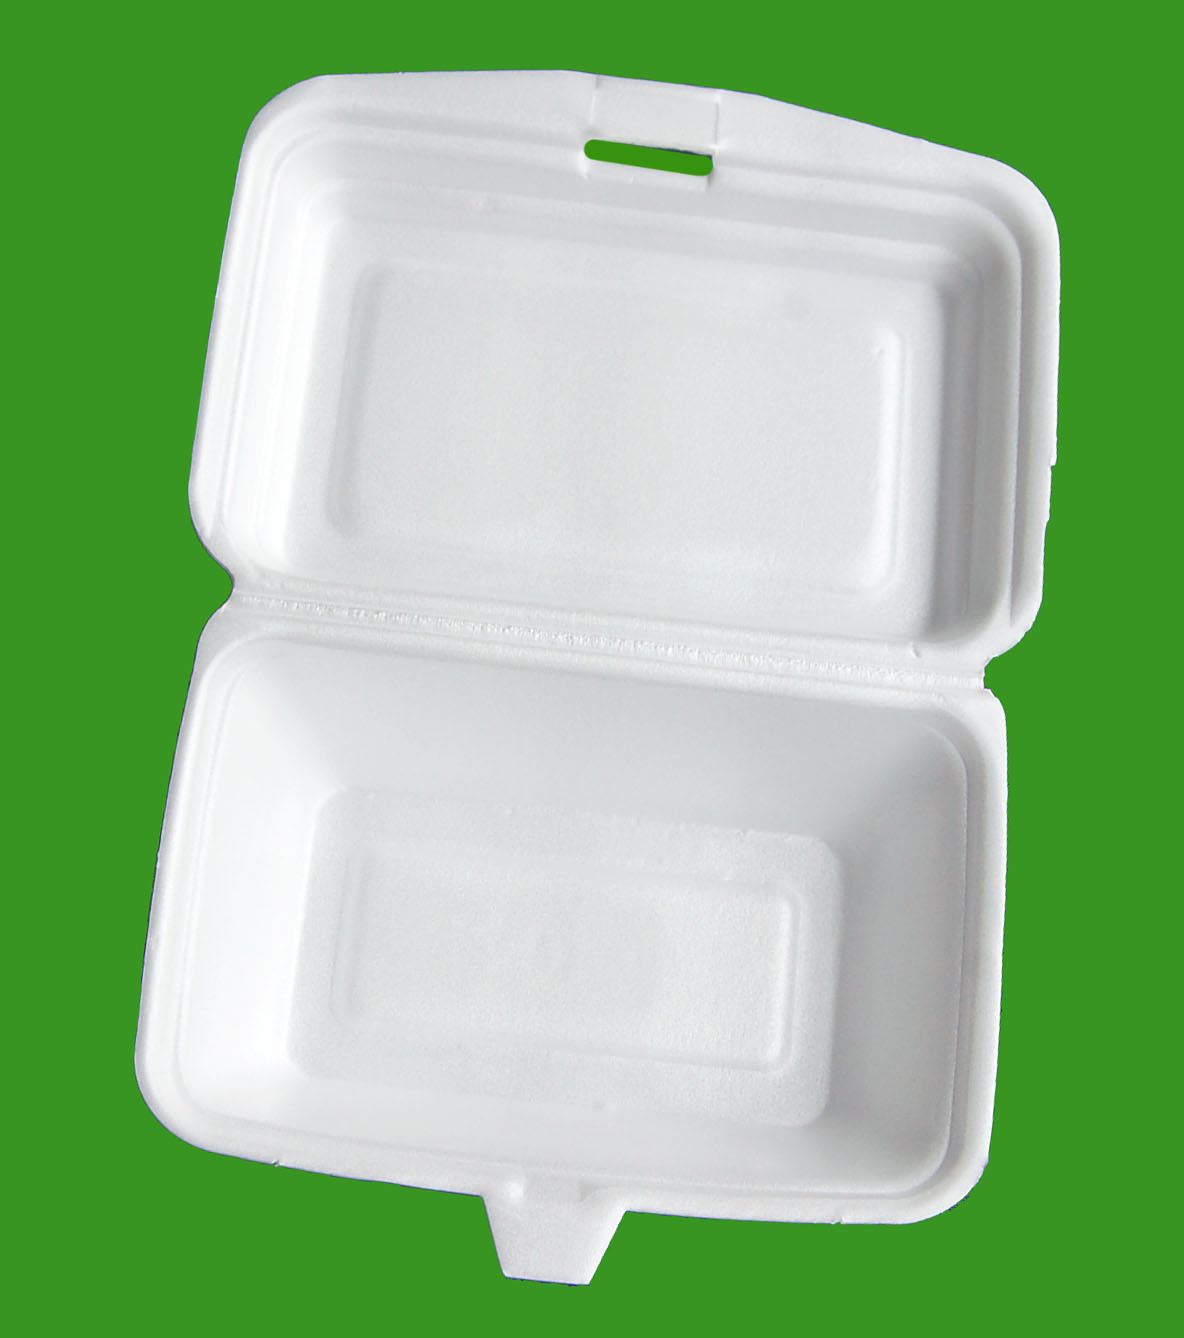 现货一次性外卖餐盒成型机 ps一次性快餐盒生产设备13583567600-阿里巴巴